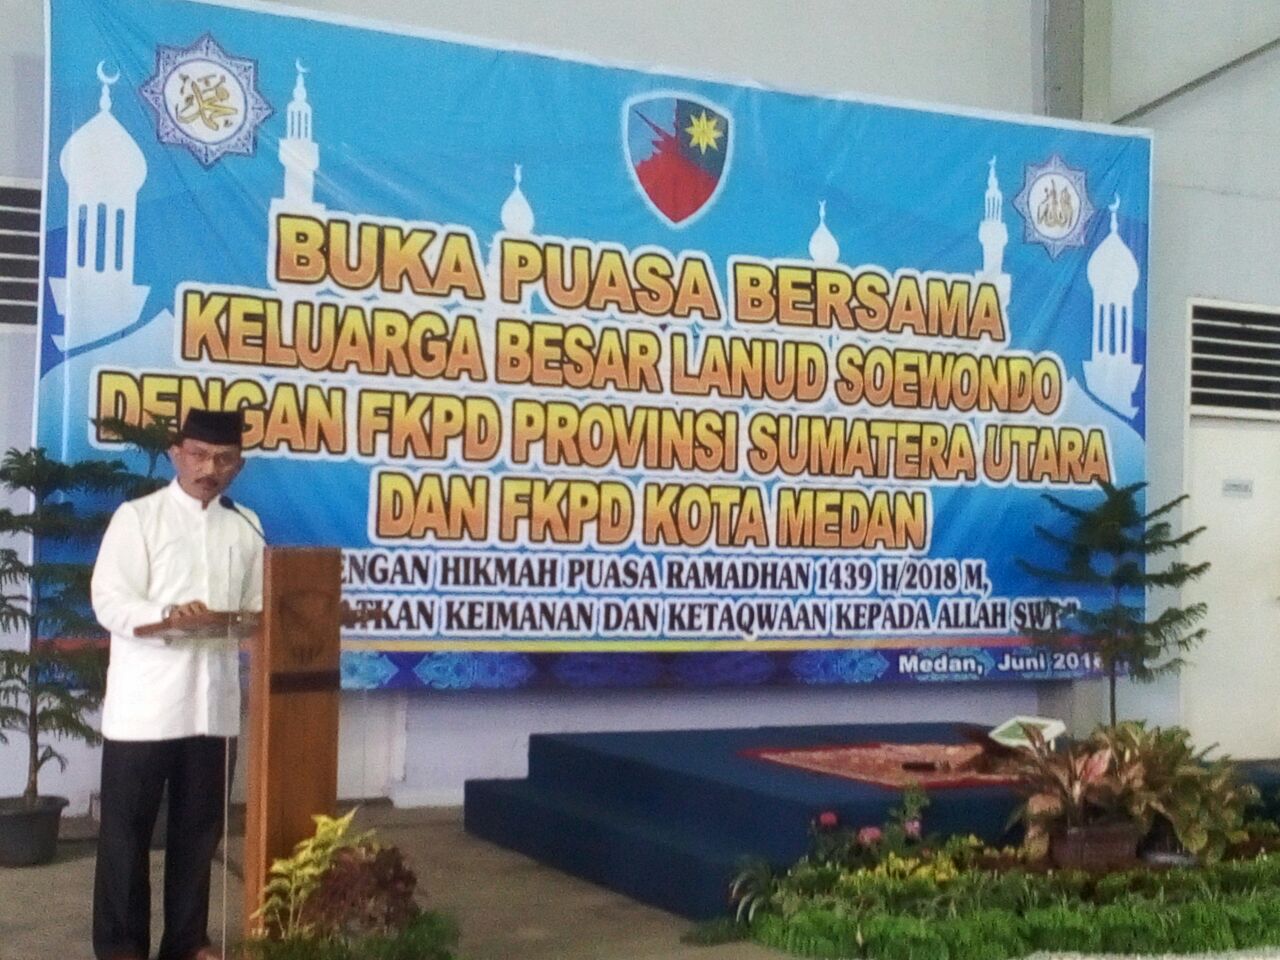 Lanud Soewondo, FKPD Provinsi Sumatera Utara dan FKPD Kota Medan Berbuka Puasa Bersama